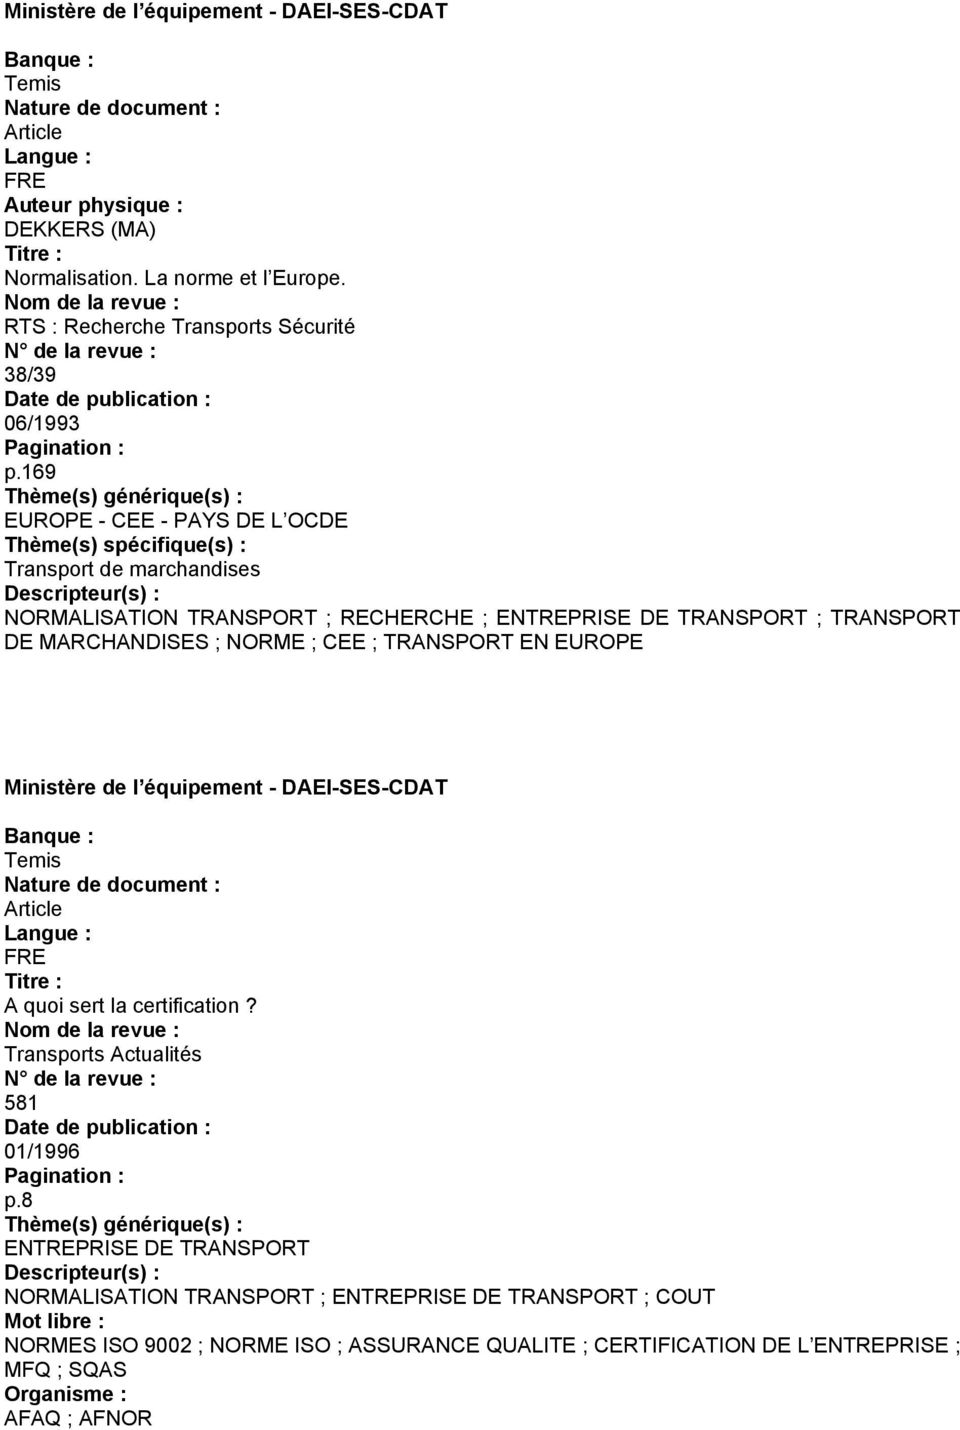 ; CEE ; TRANSPORT EN EUROPE A quoi sert la certification? Transports Actualités 581 01/1996 p.